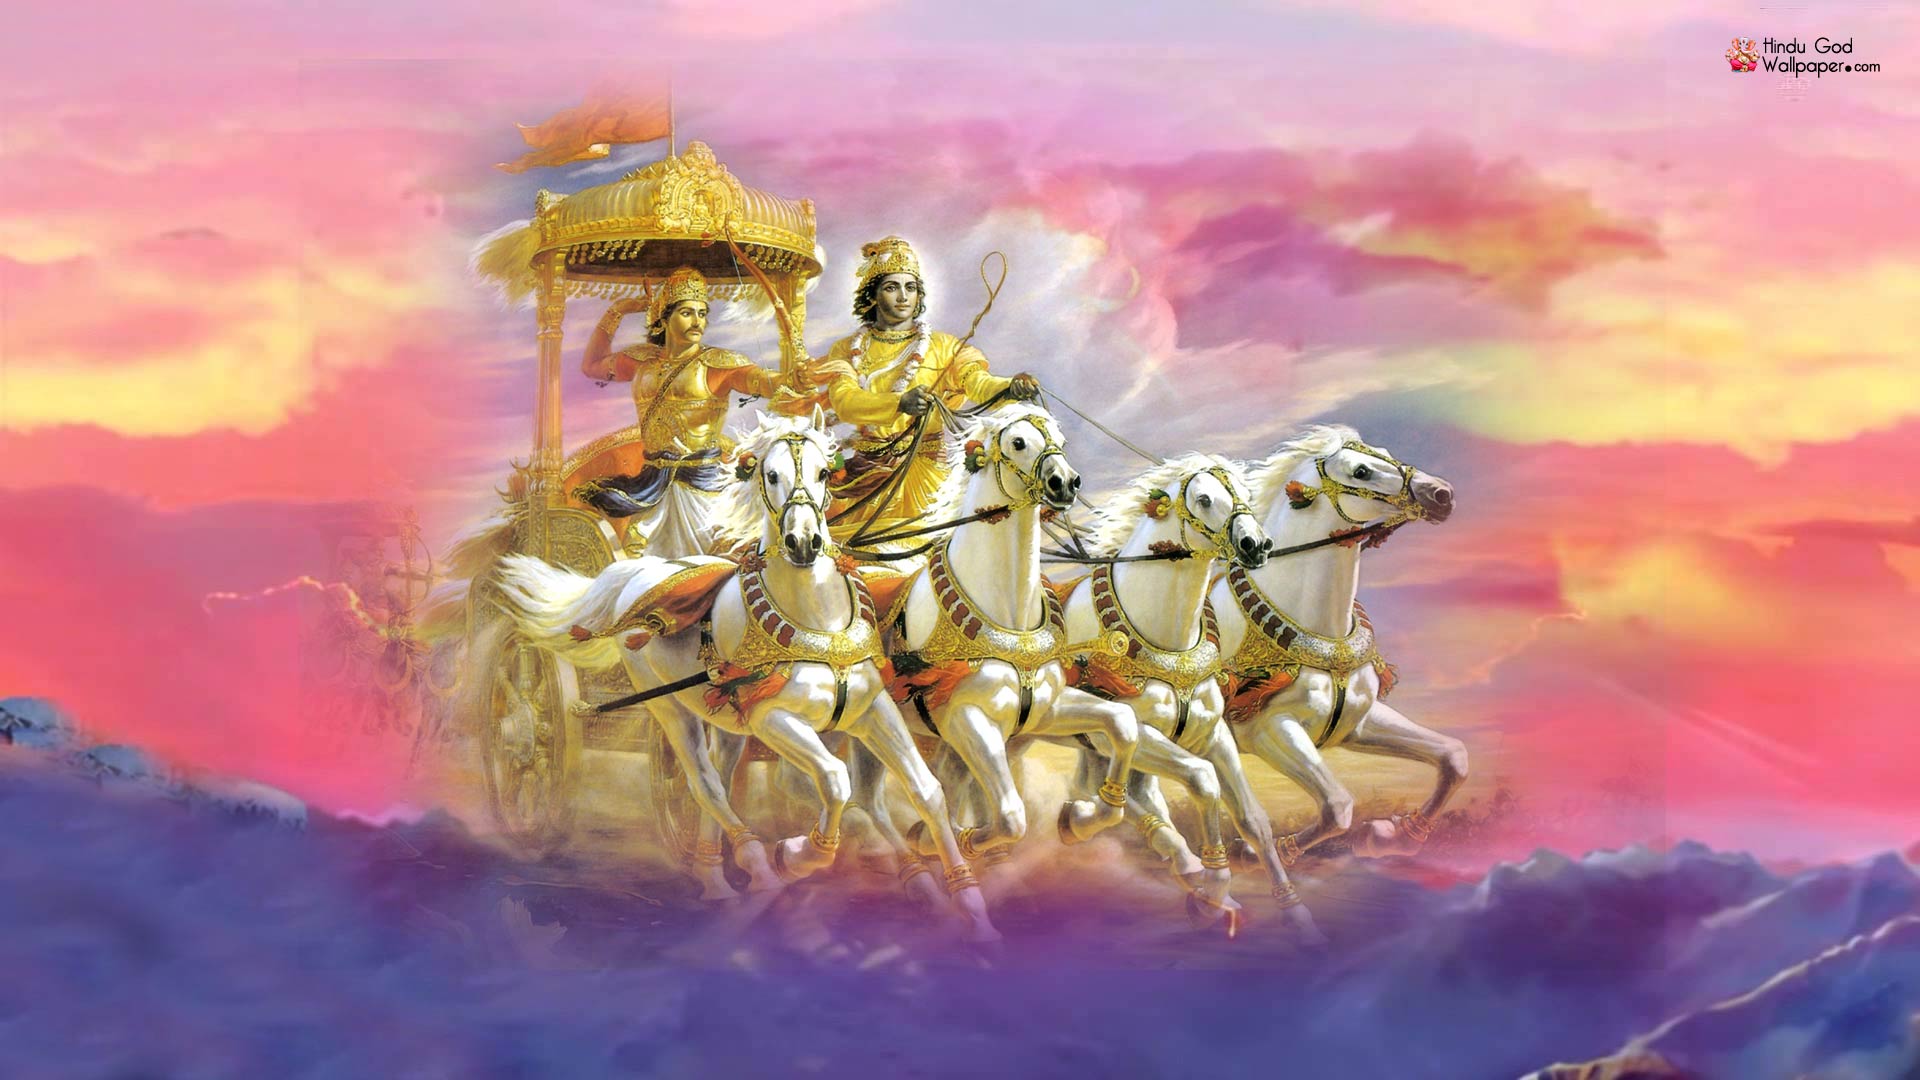 Shri Krishna Mahabharat Wallpapers Images Free Download